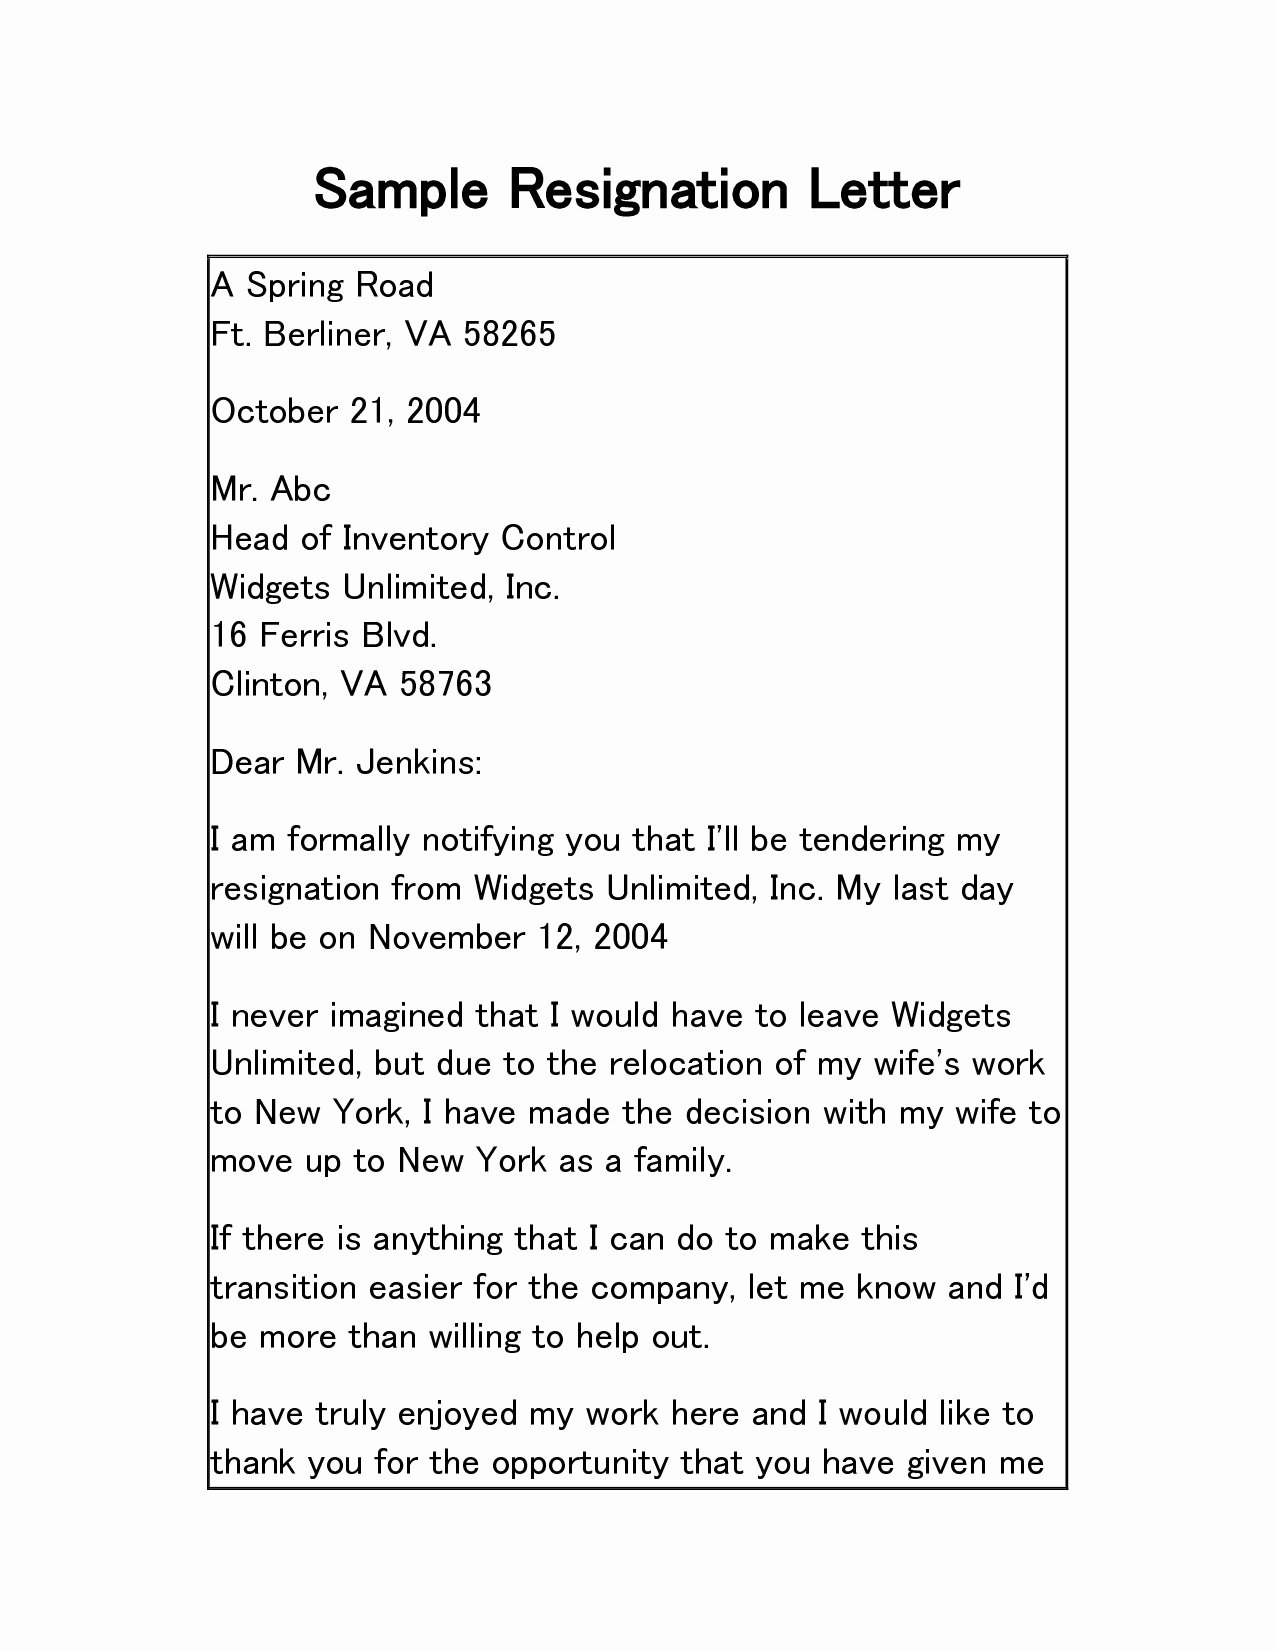 Resignation Letter for Family Reason Fresh 9 Family Reason Resignation Letter for Personal Problem